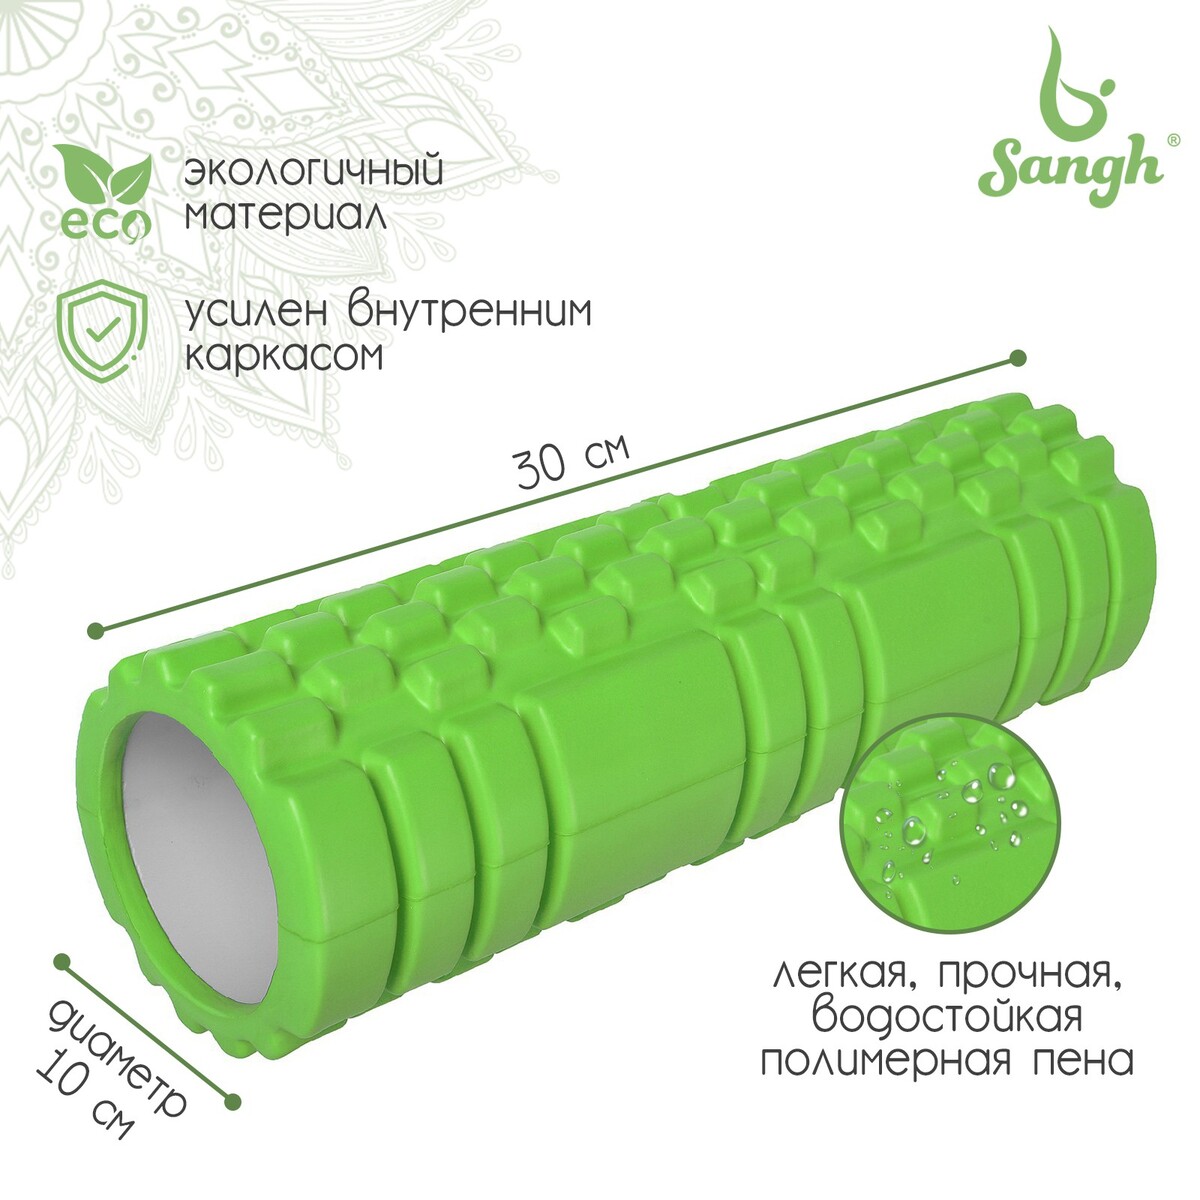 Ролик массажный sangh, 30х10 см, цвет зеленый ролик массажный средняя жесткость pro 32 5x12 5 cм star fit fa 507 мятный серый